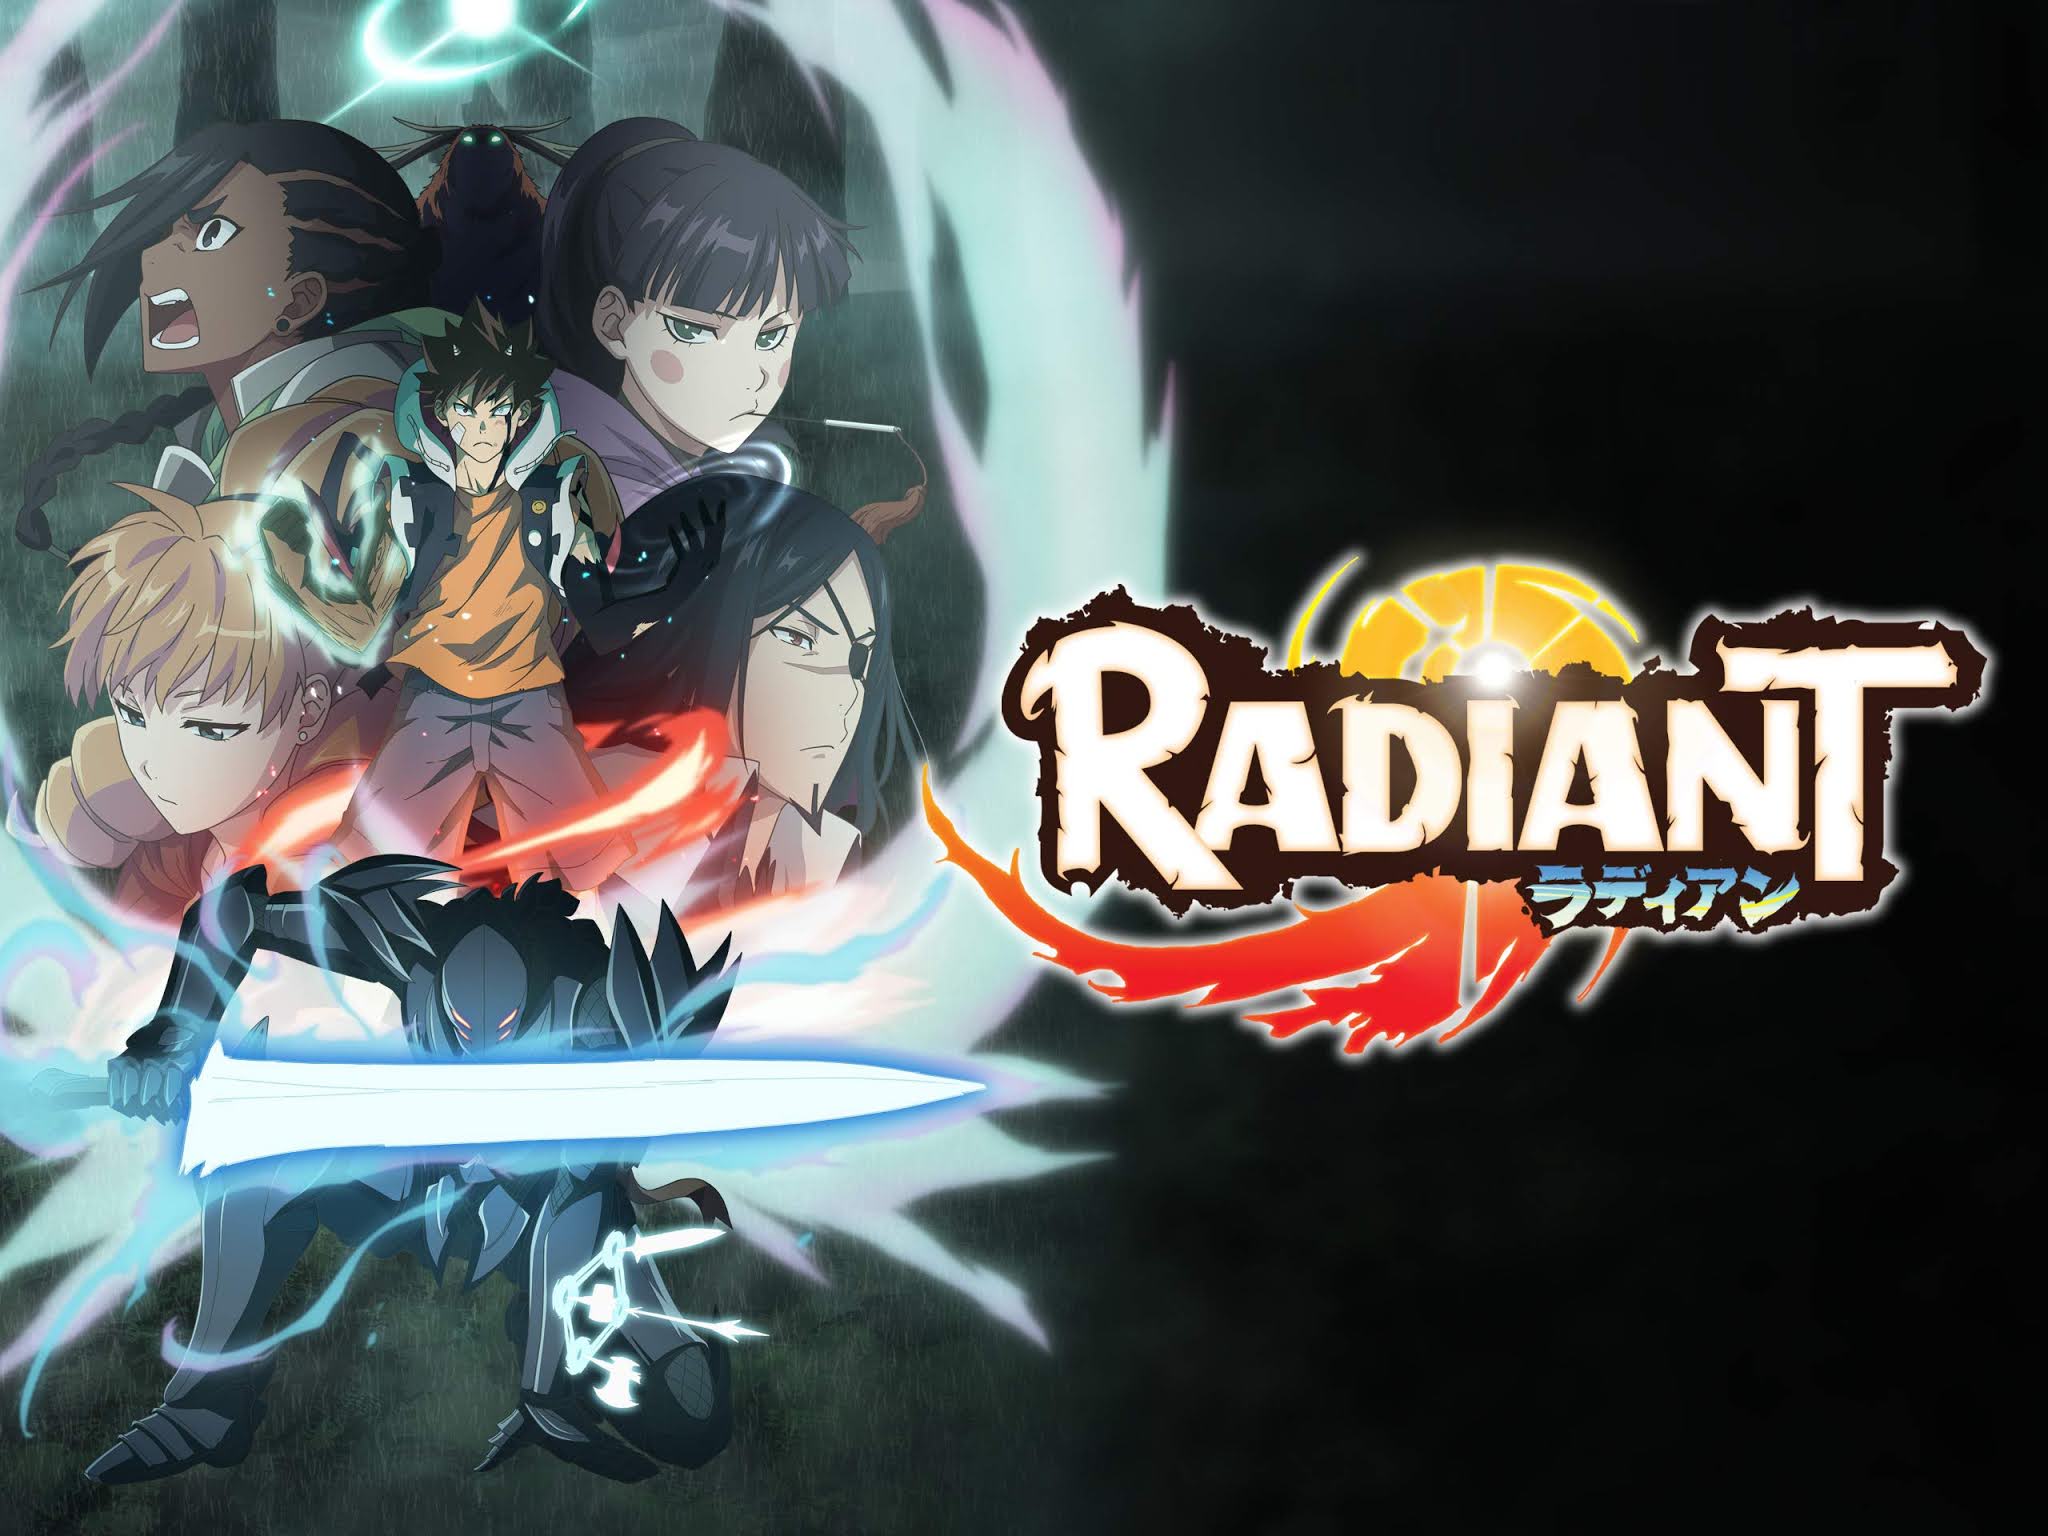 Radiant, Anime chega dublado no bloco Toonami Powered by Crunchyroll